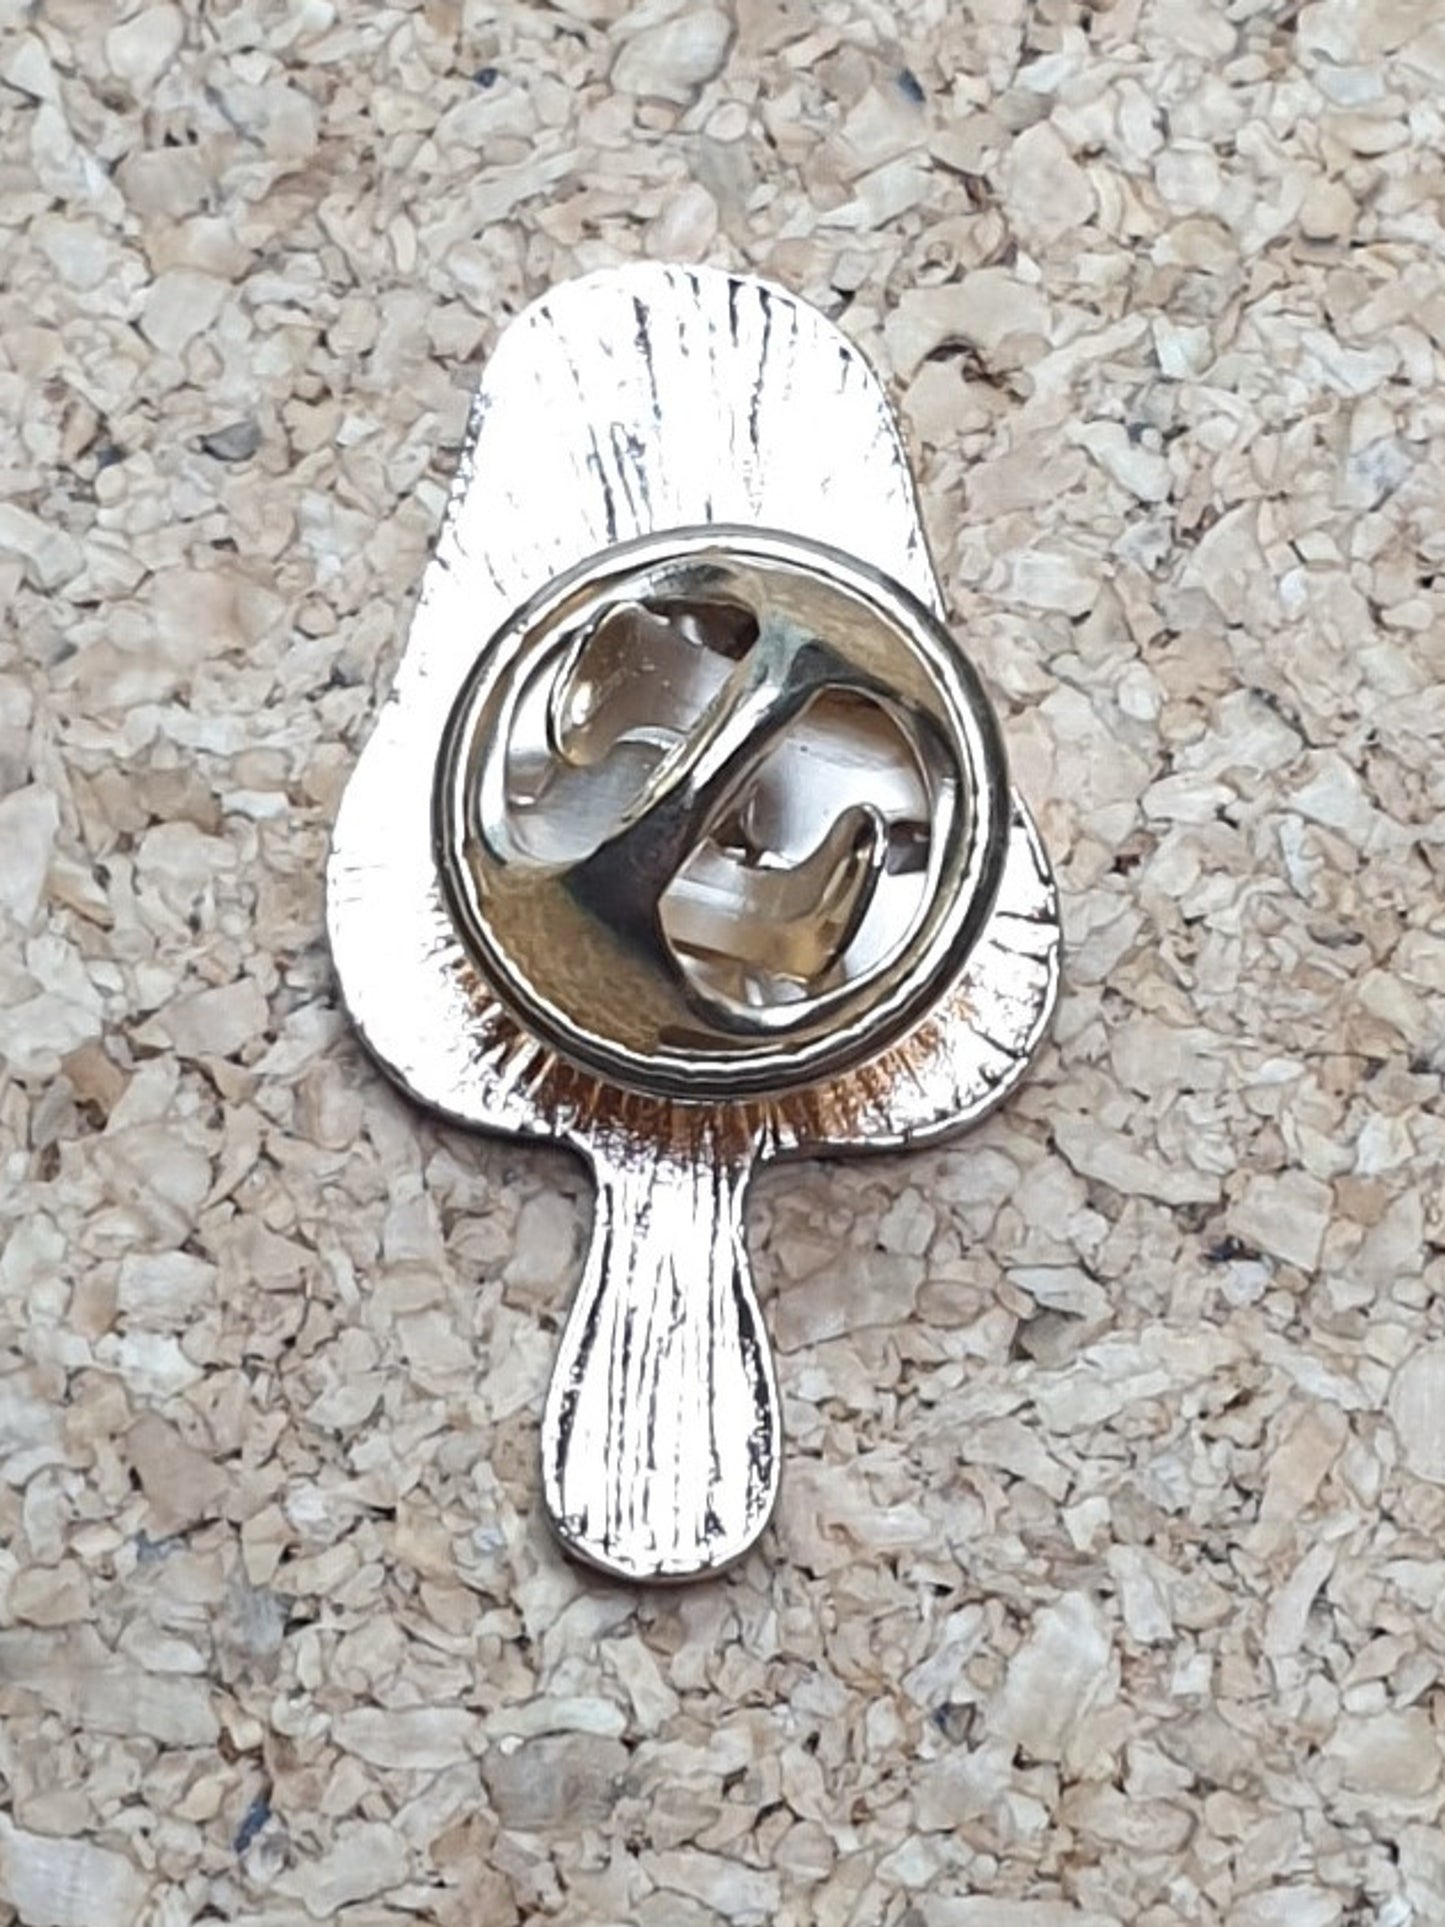 Magic Mushroom Pin